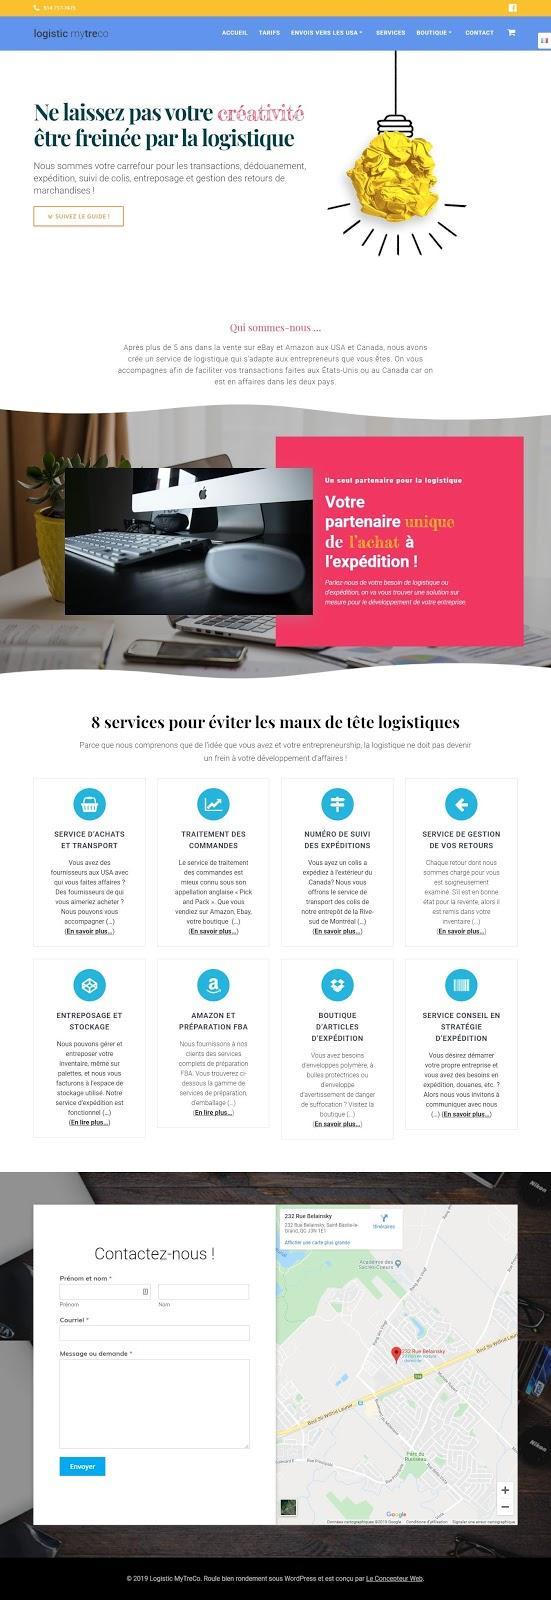 Le Concepteur Web,WebMetric, Le Concepteur Web - Formation Wordpress à Montréal (QC) | WebMetric